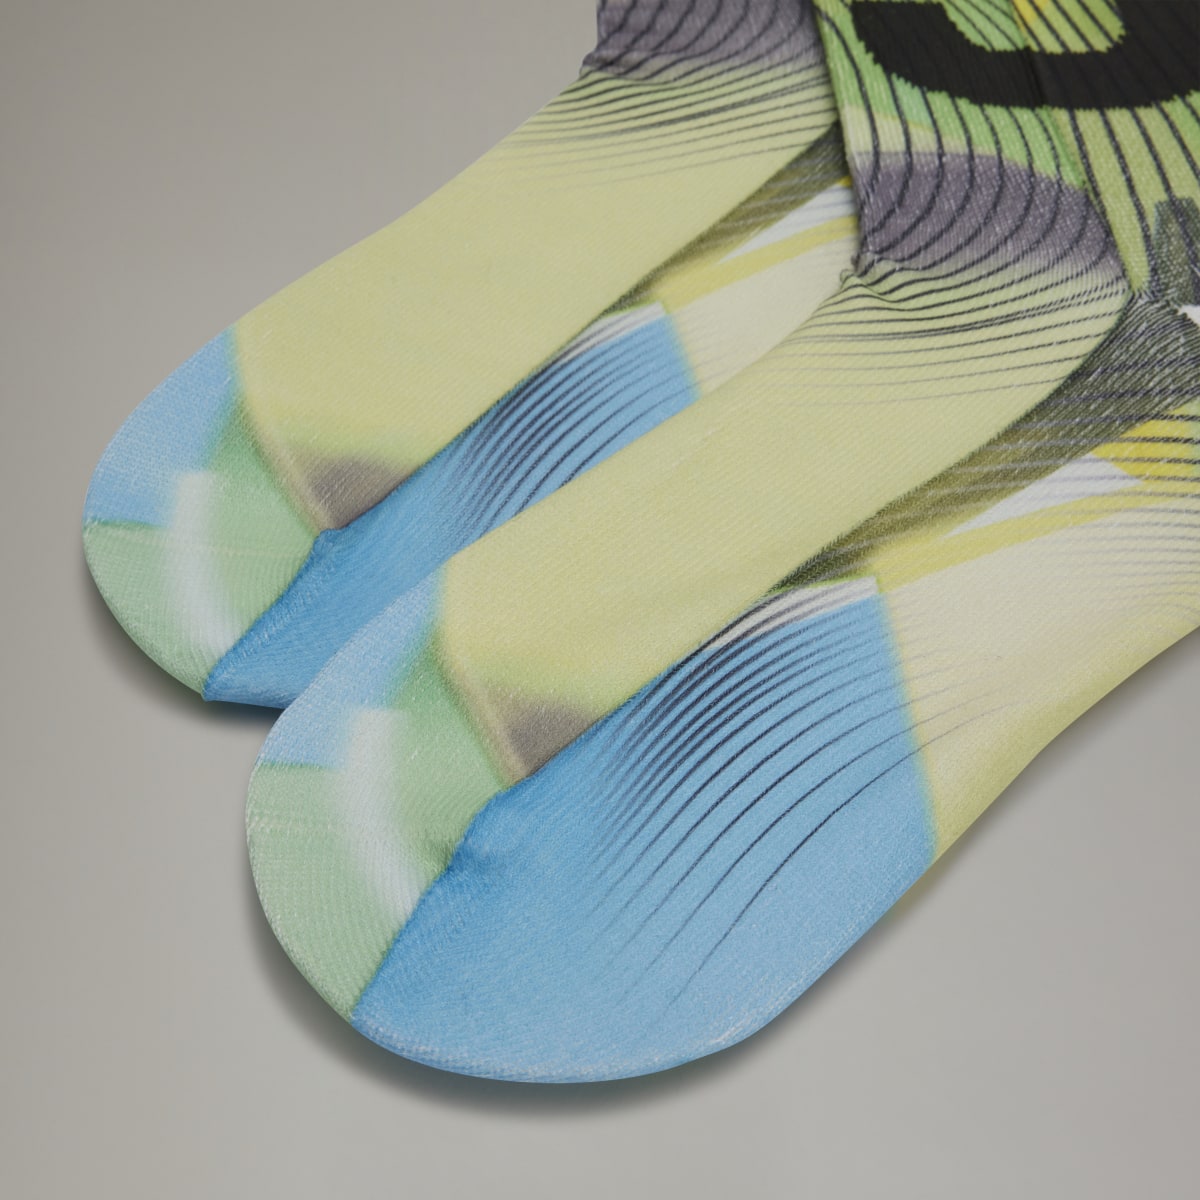 Adidas Y-3 Allover Print Socks. 4